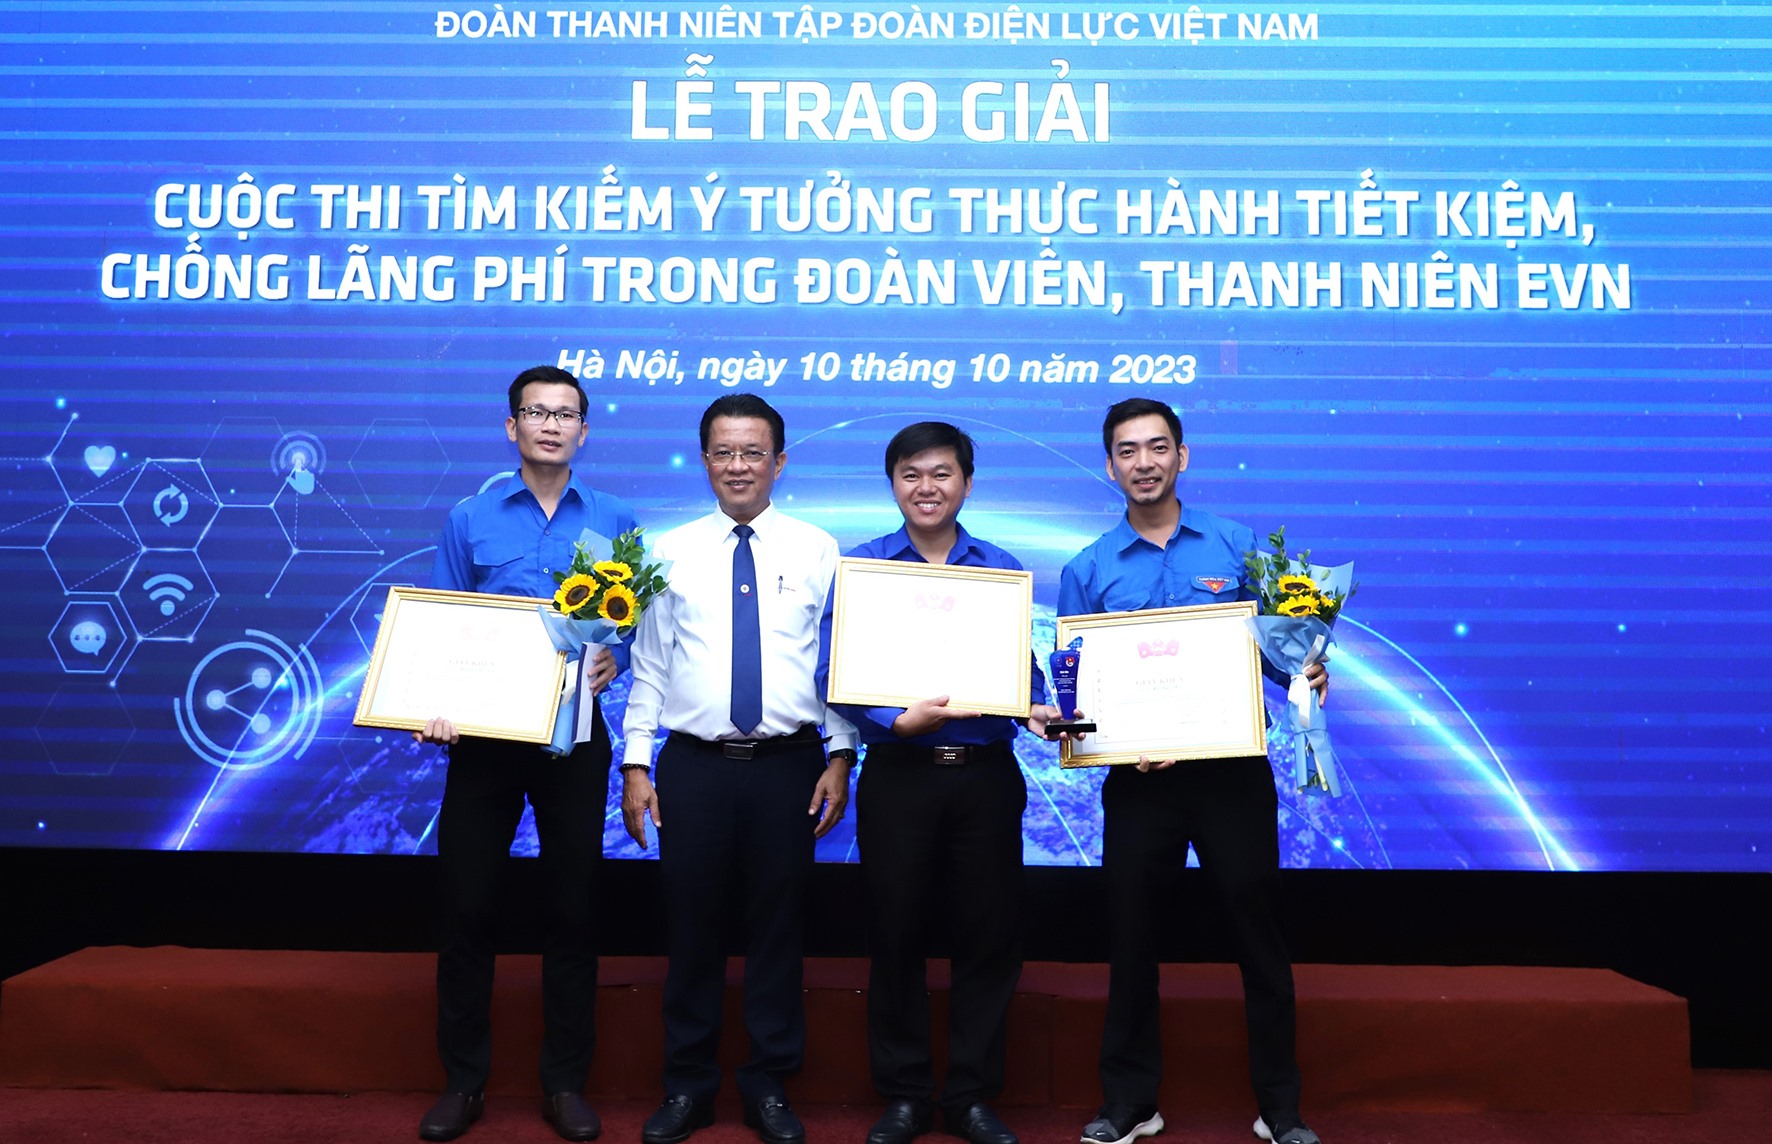 Anh Lê Văn Minh (thứ hai, từ phải qua) cùng với 2 tác giả ở PC Quảng Trị đoạt giải xuất sắc tại Cuộc thi“Ý tưởng về thực hành tiết kiệm chống lãng phí trong đoàn viên, thanh niên EVN” -Ảnh: M.T